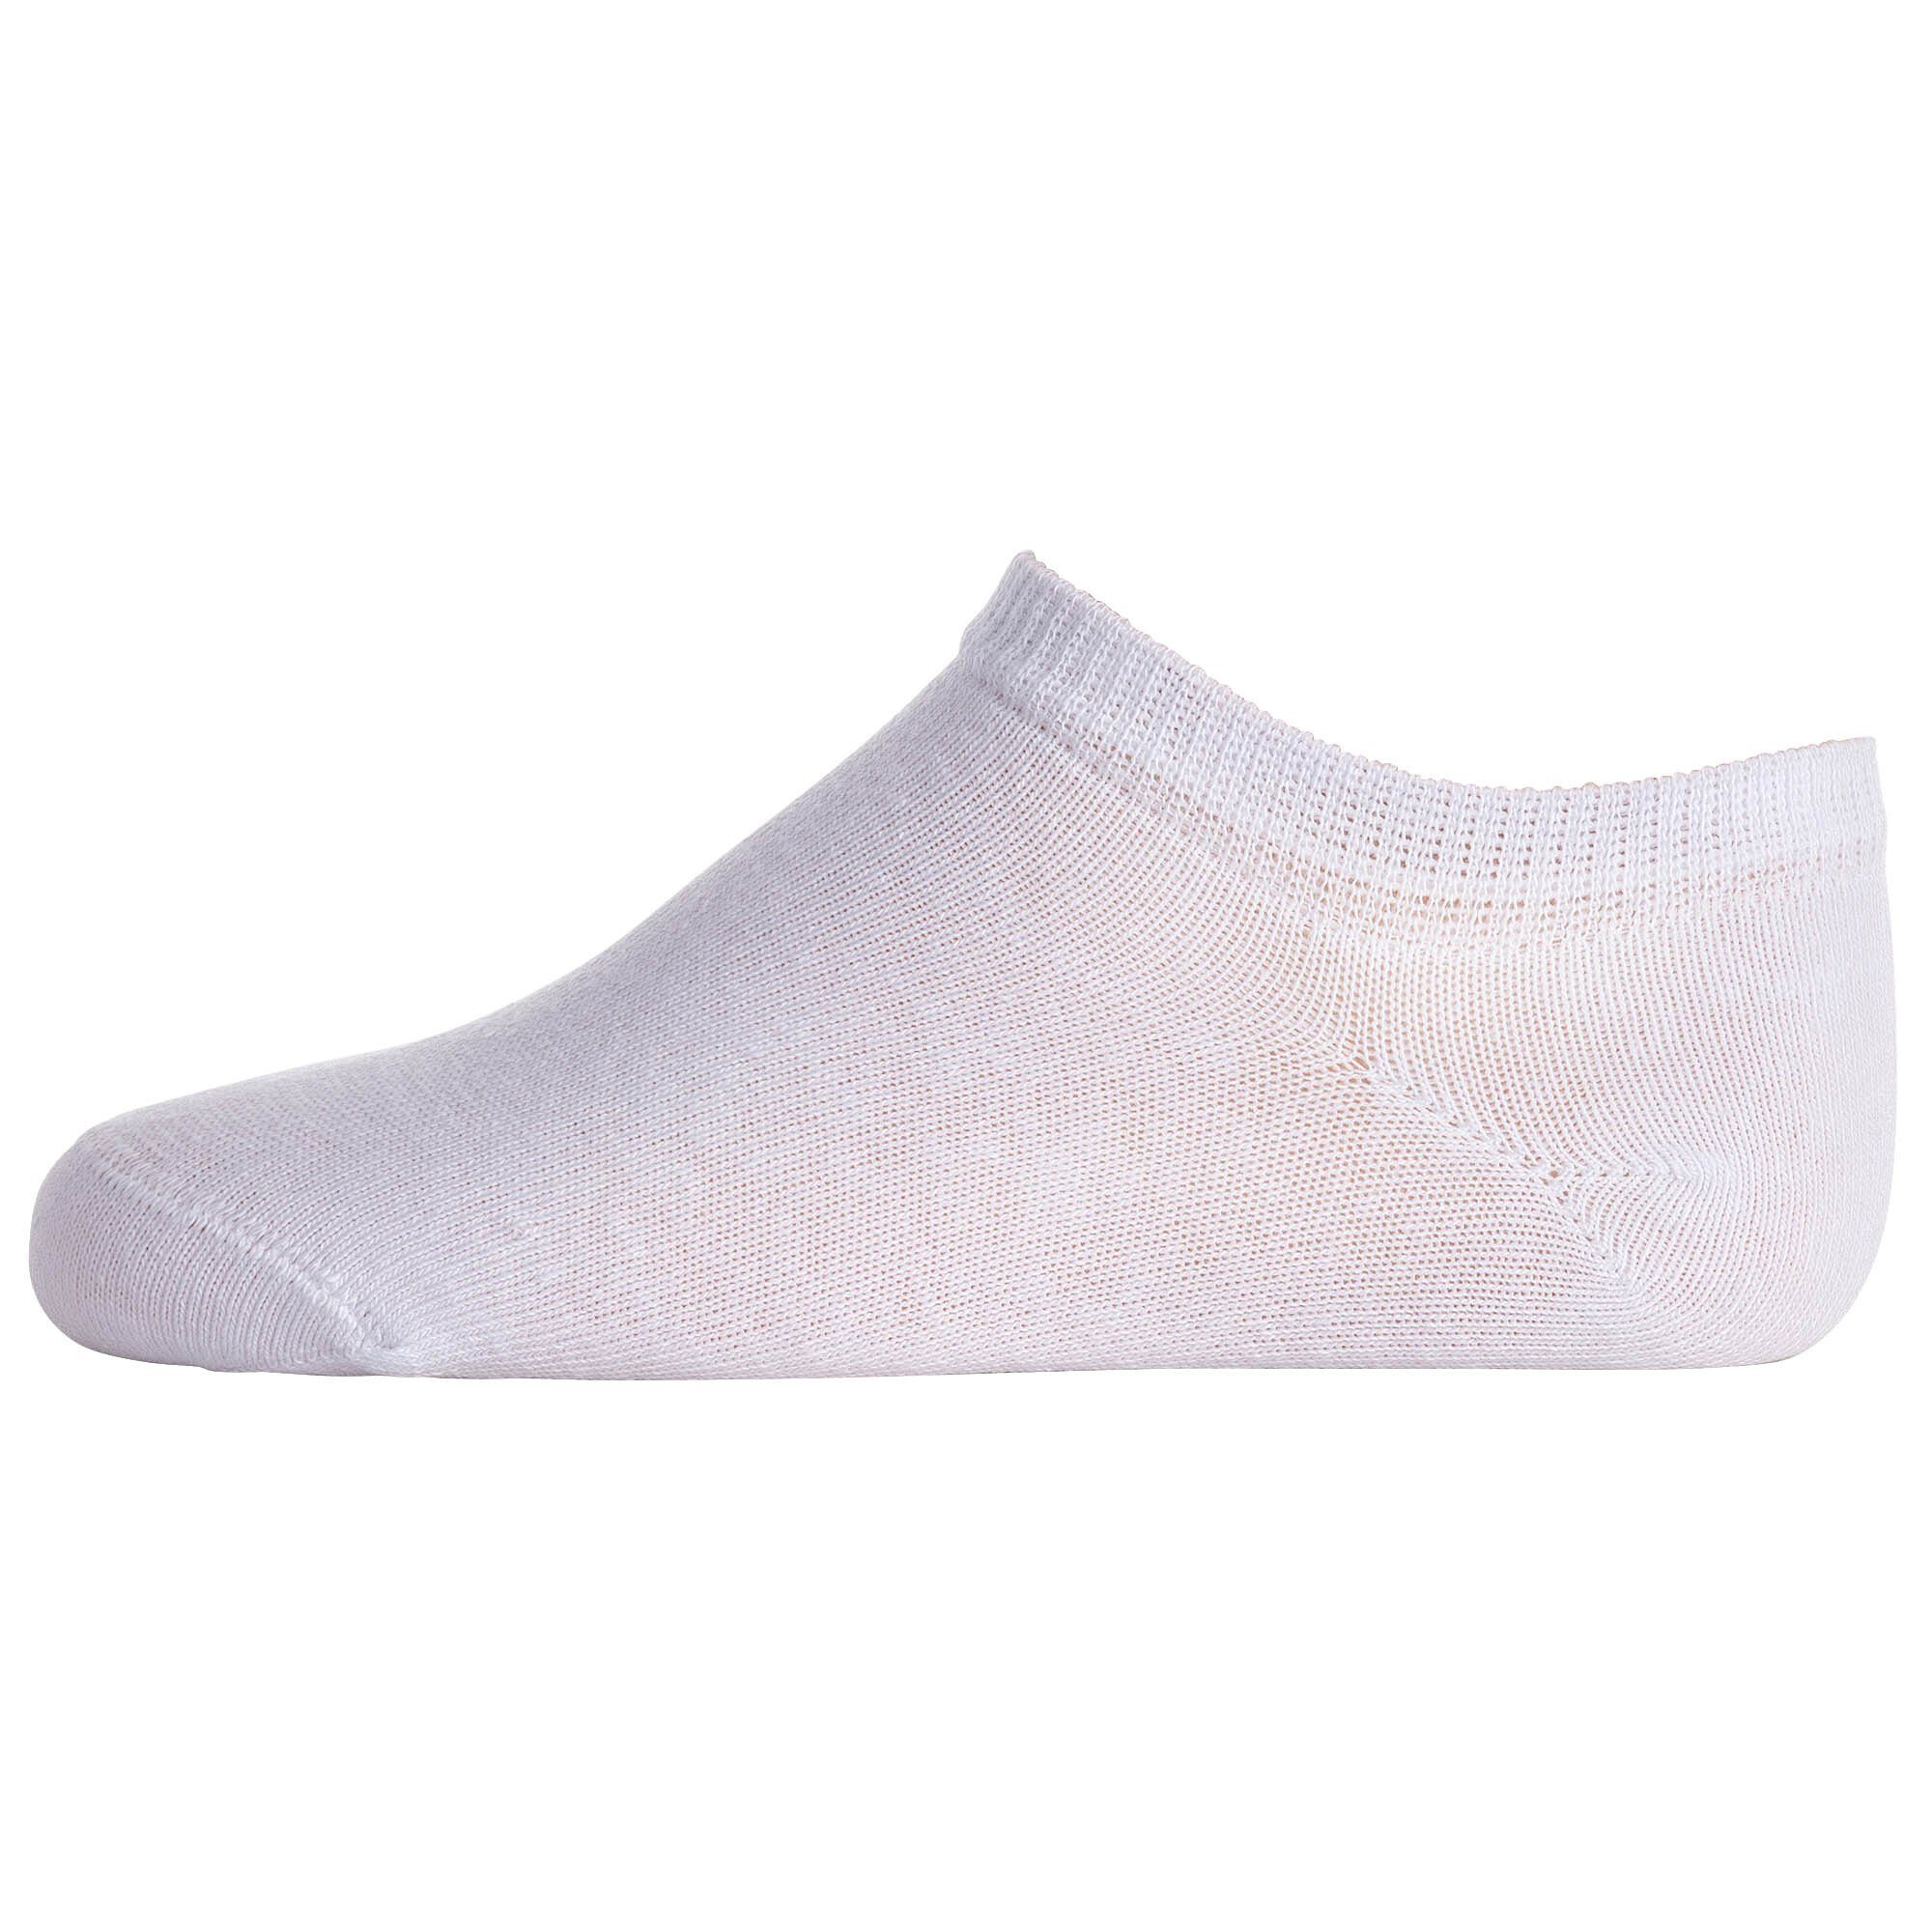 5er Pack- Weiß/Pink/Lila/Schwarz Logo Freizeitsocken Socken, Champion Kinder Sneaker,